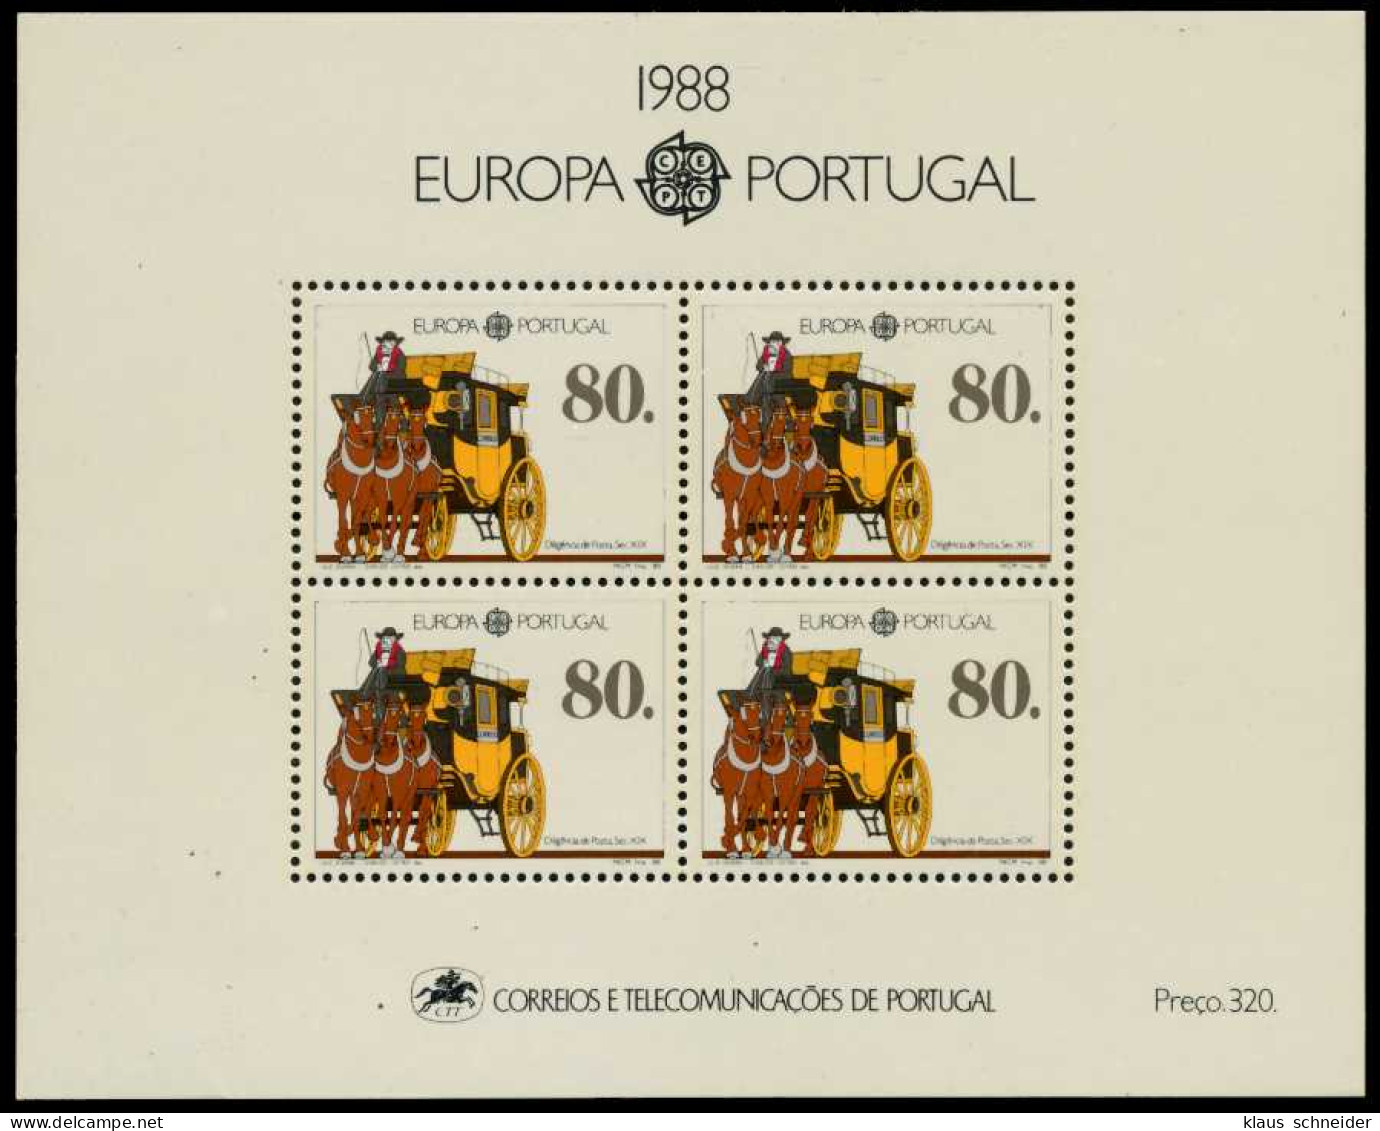 PORTUGAL Block 57 Postfrisch S00D076 - Blocs-feuillets